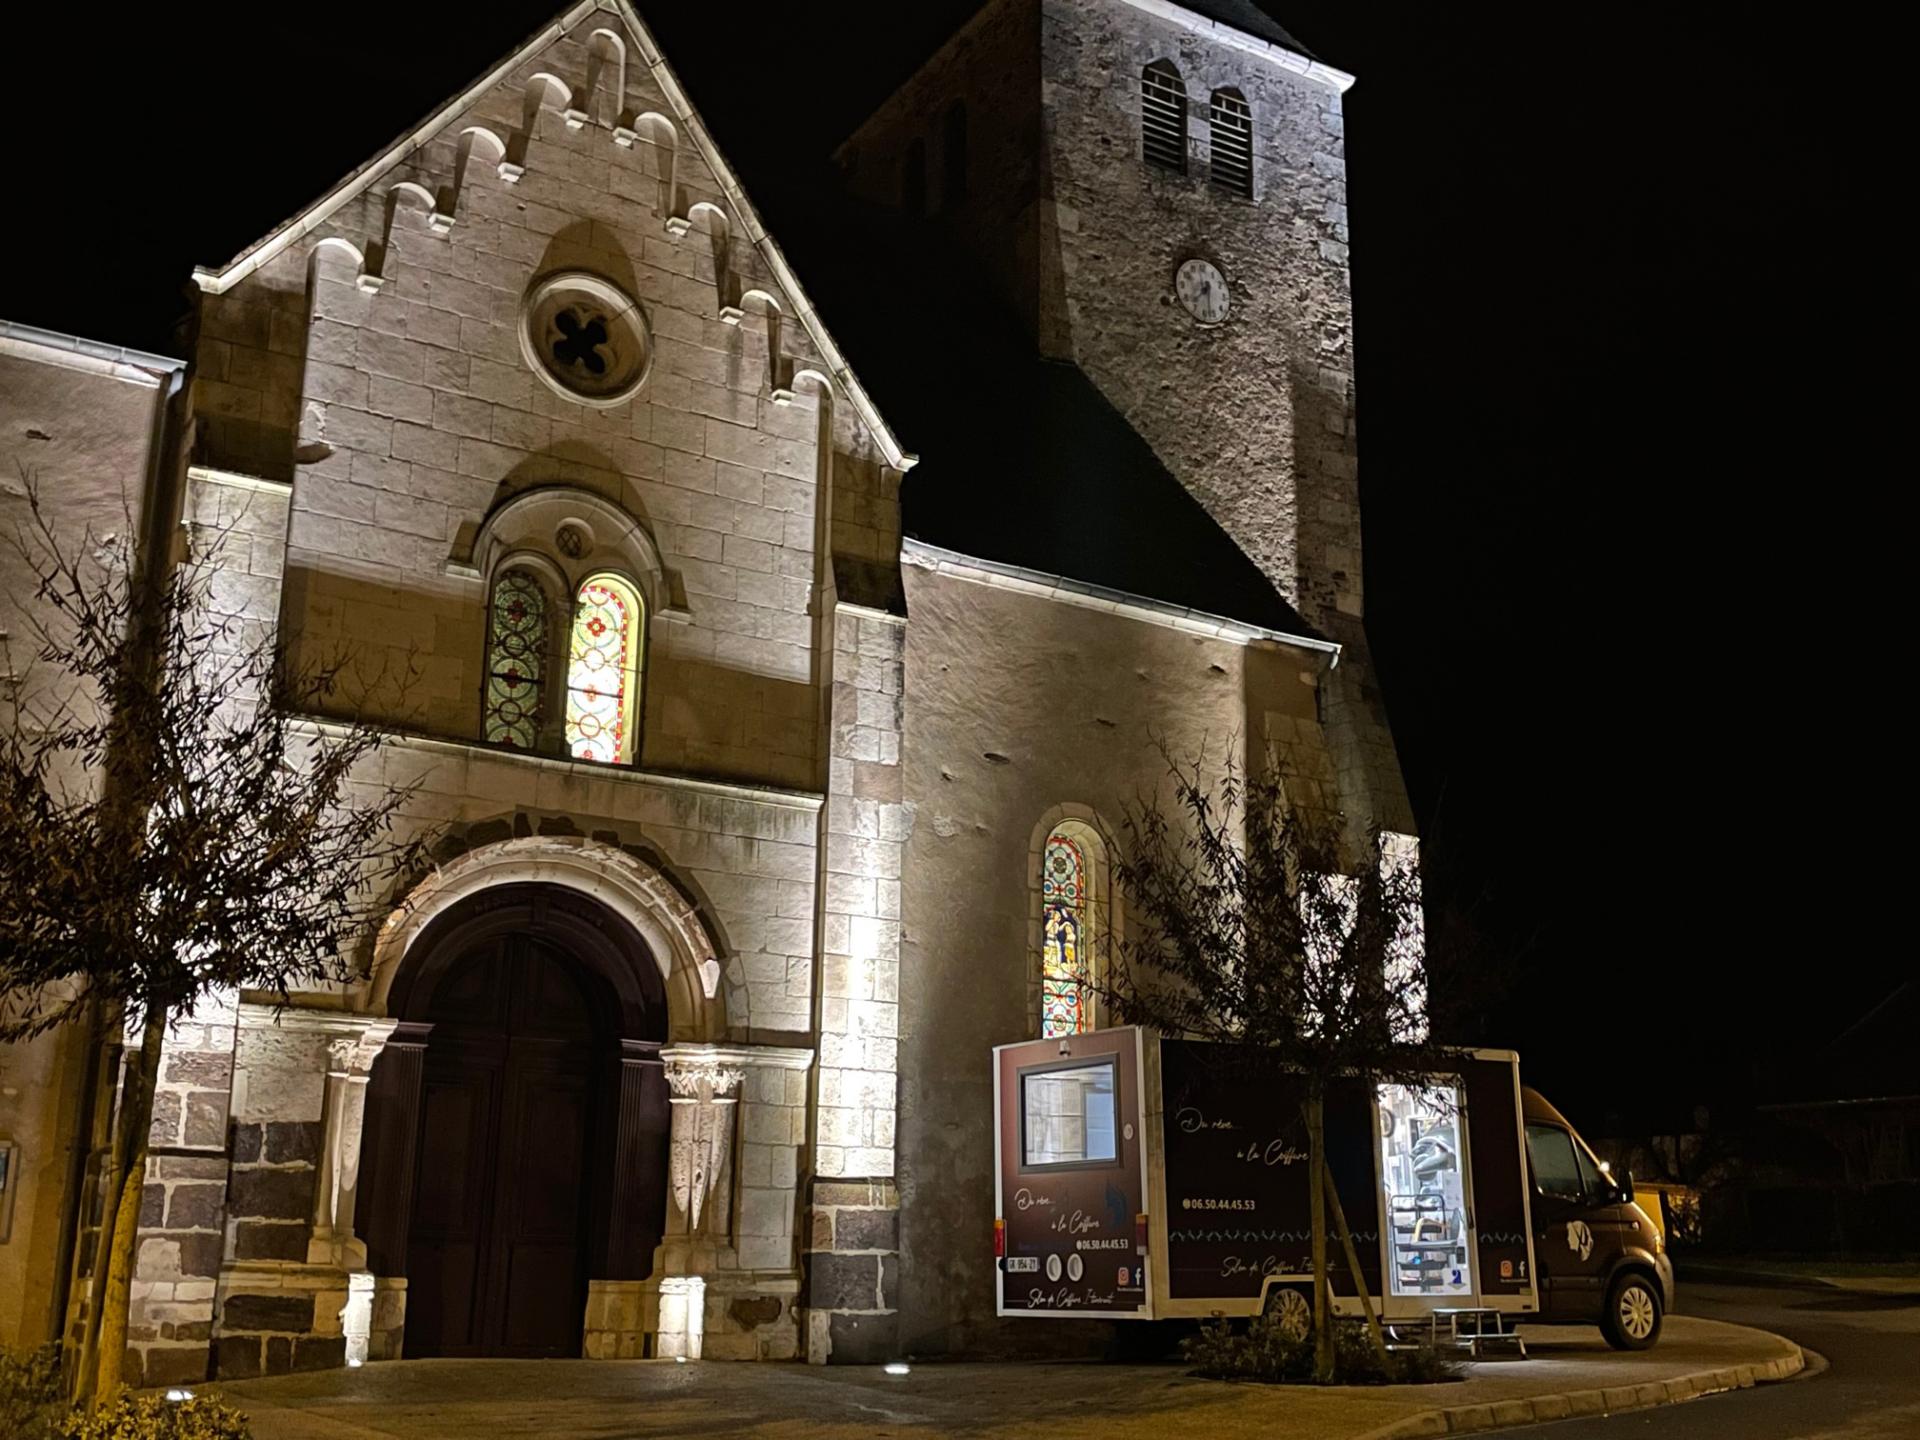 Camion devant l'église, de nuit